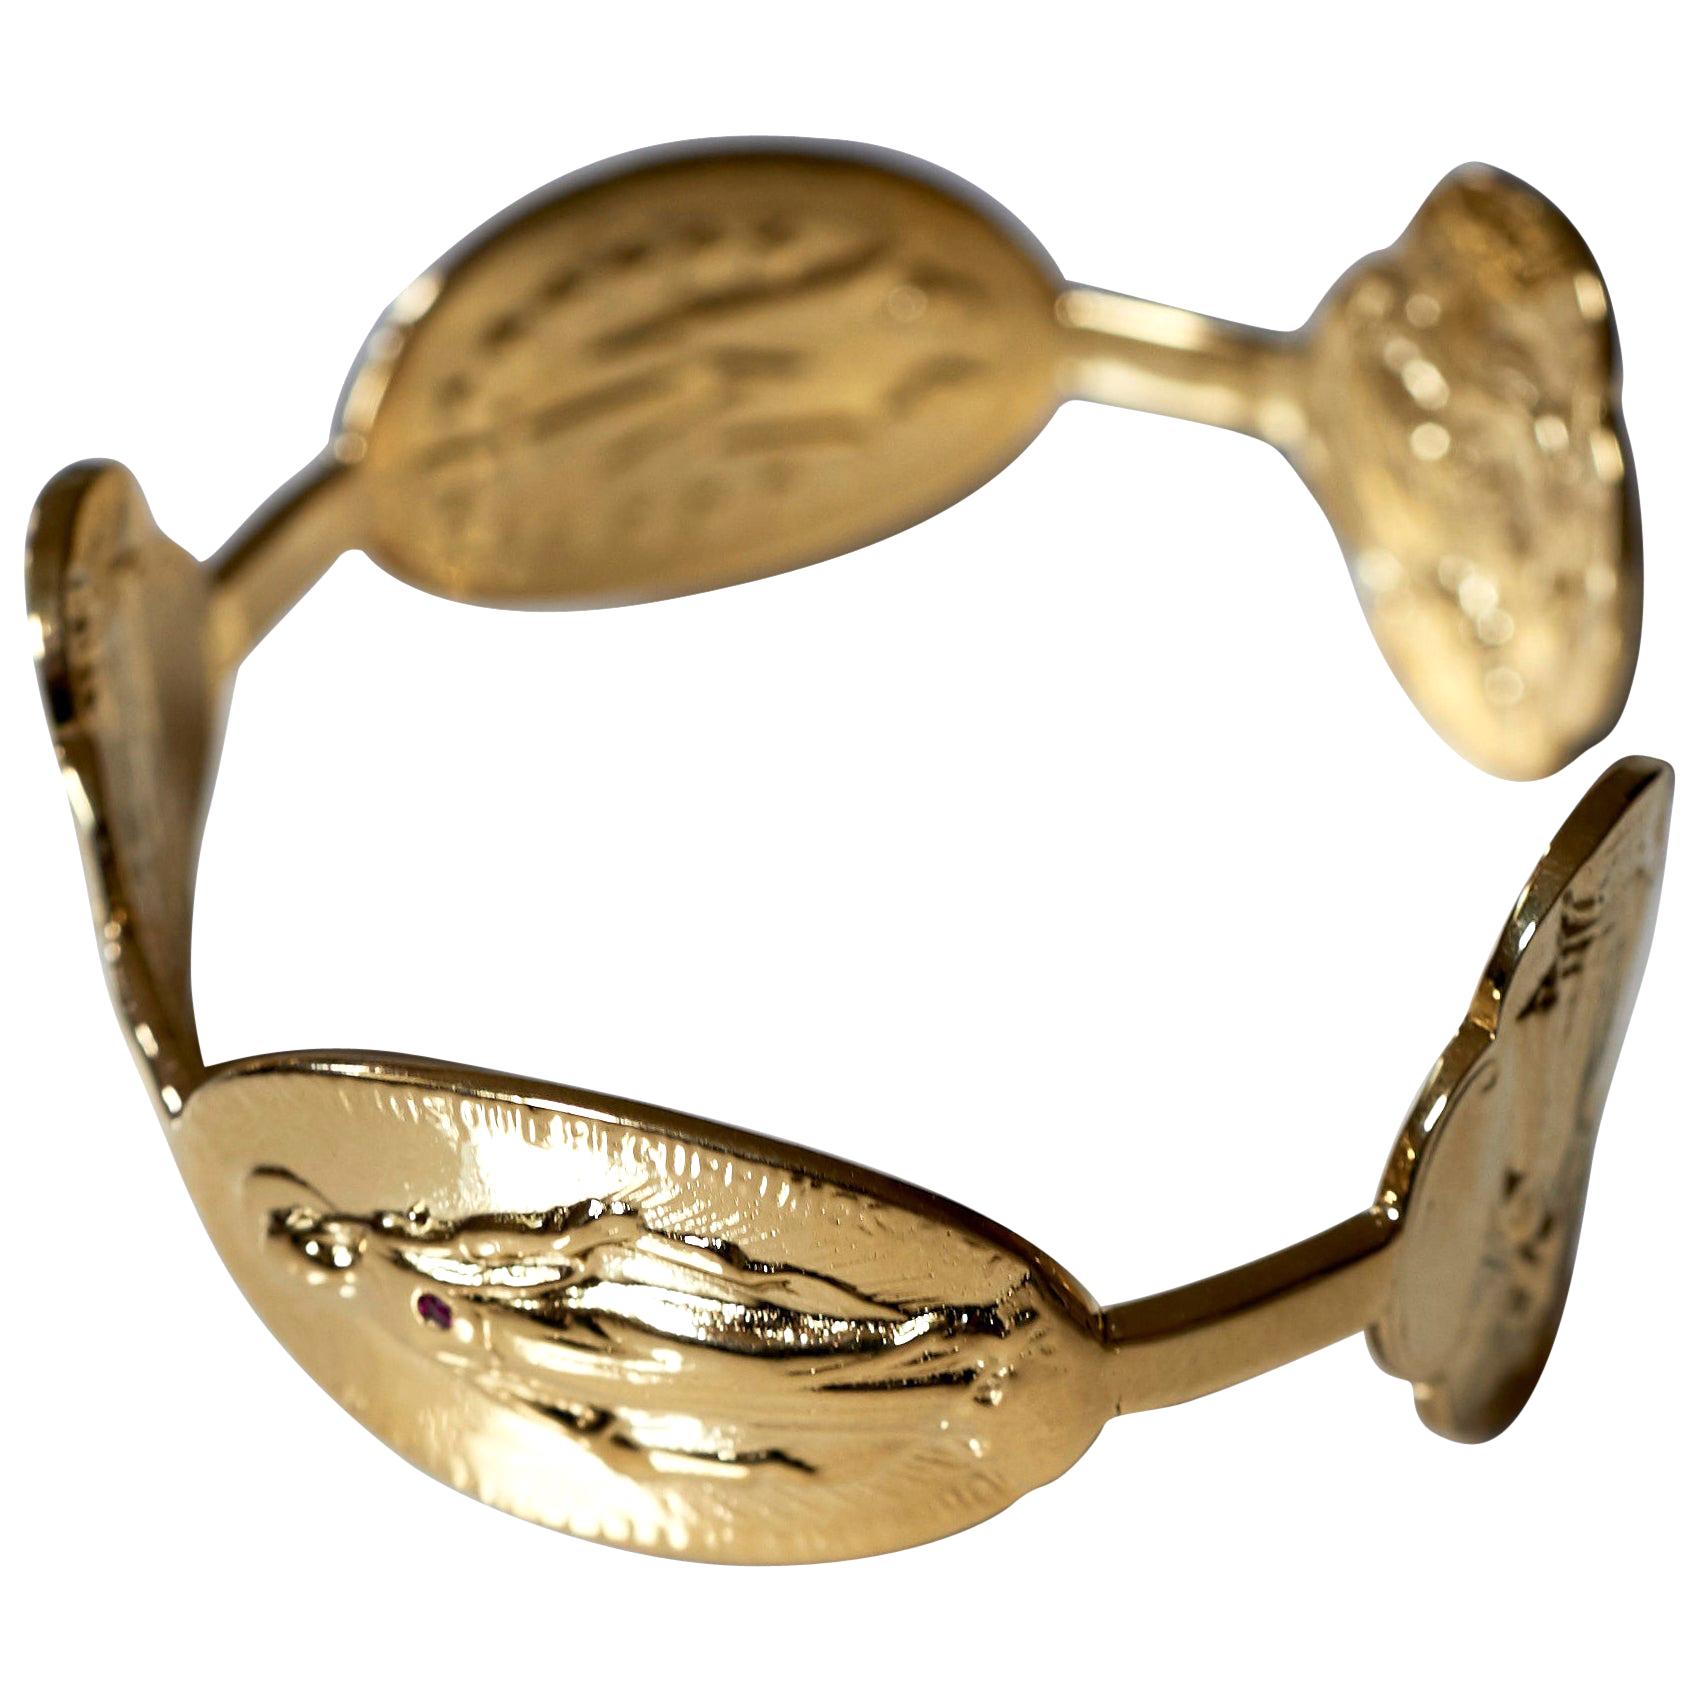 virgin mary bracelet